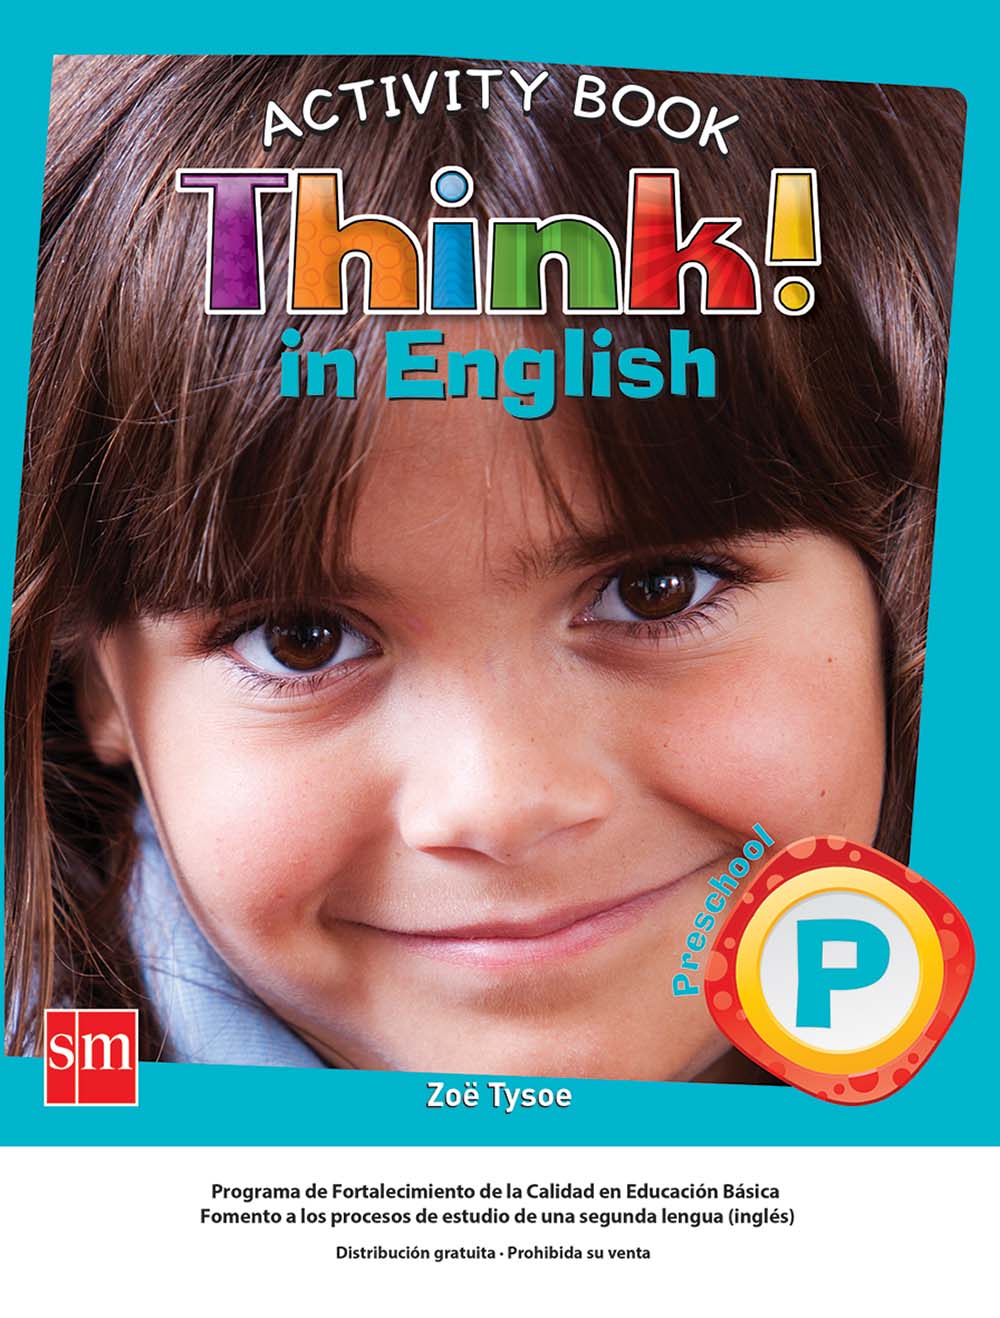 Think! In English P Cuaderno de Actividades, Editorial: Ediciones SM, Nivel: Preescolar, Grado: 3